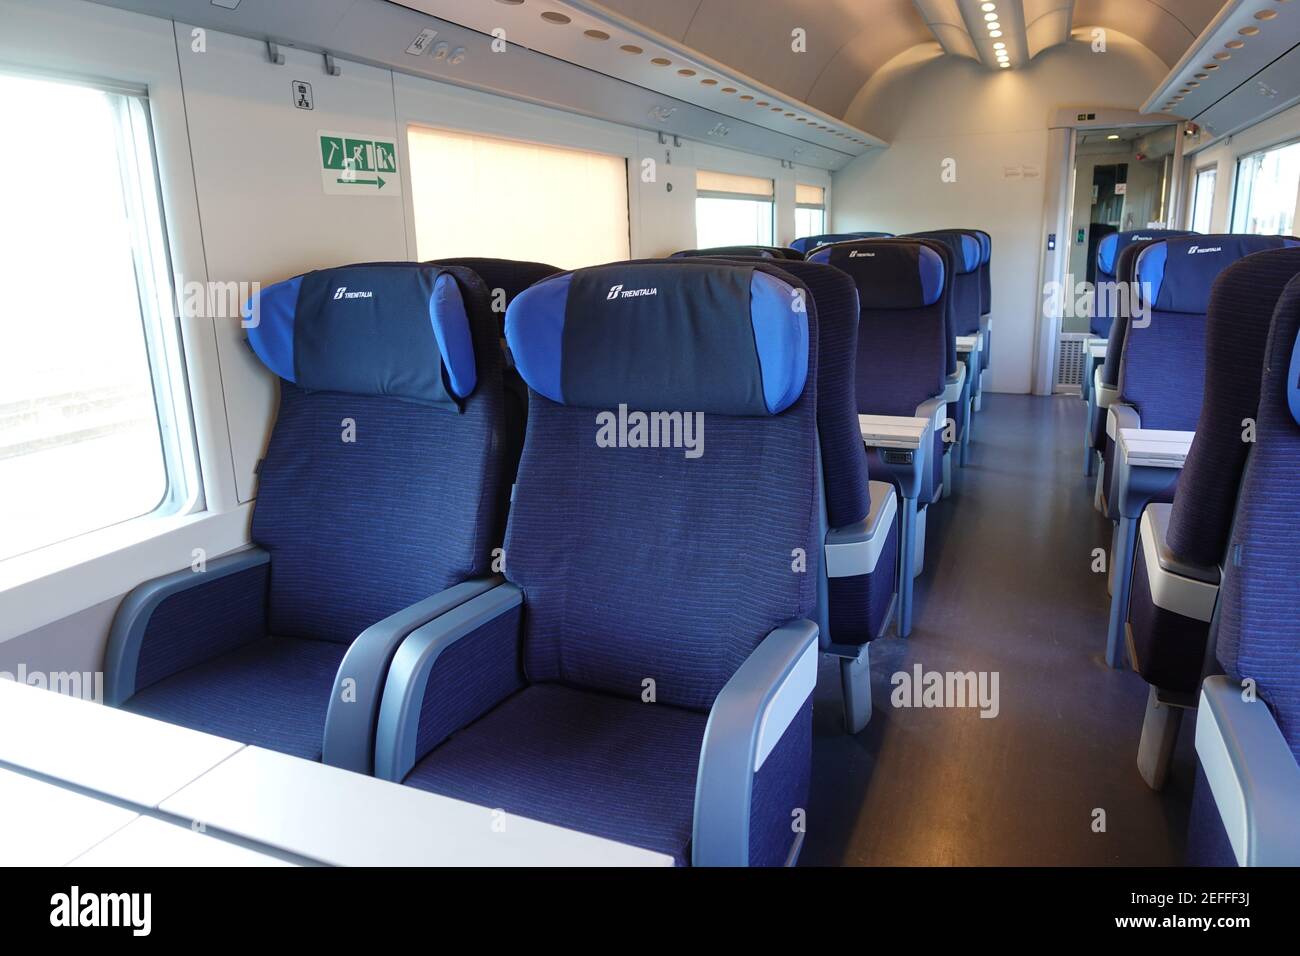 Rome, Italy - May 19, 2017:Empty train interior seats during travel. Euro star high speed train of Trenitalia major italian railway company. Stock Photo